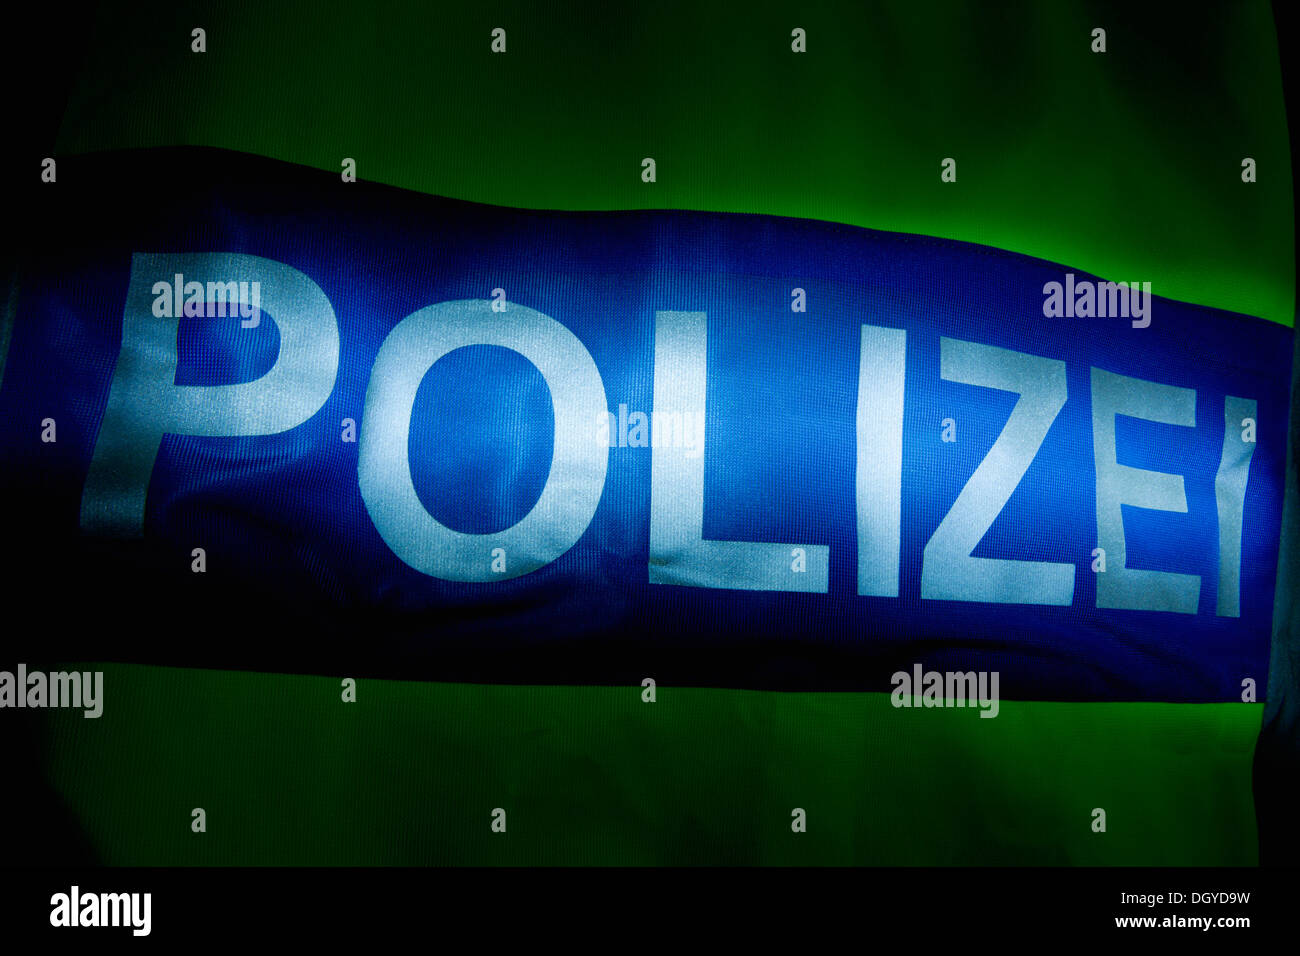 Polizei (Police en allemand) écrit sur le dos d'une veste de réflexion, éclairé Banque D'Images